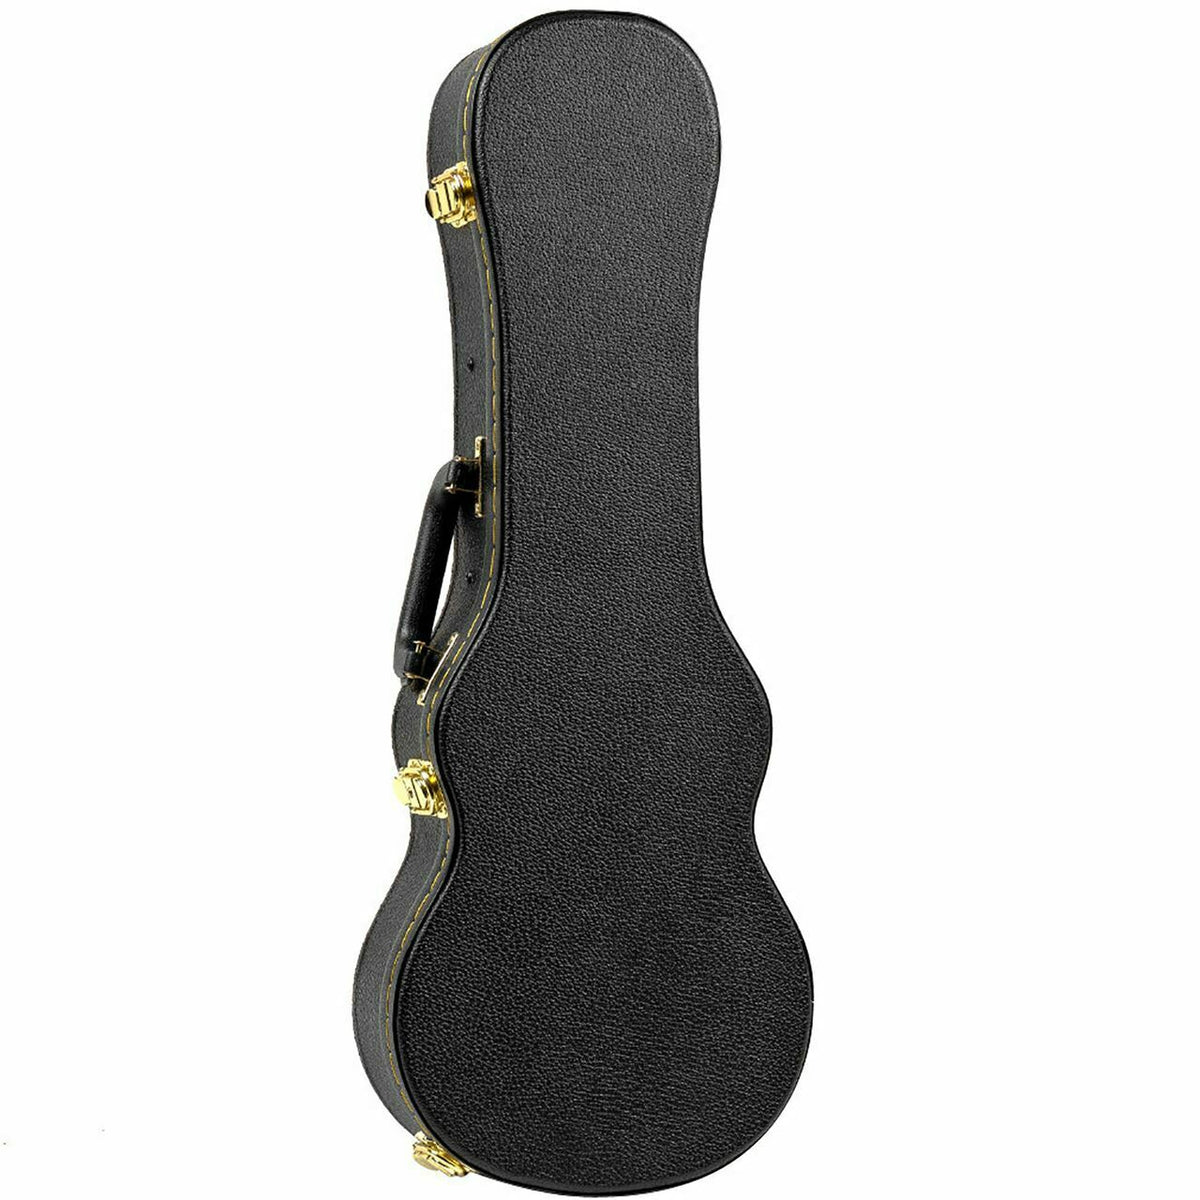 Guardian CG-020-US Soprano ukulele hard case Ukulele Trading Co Australia